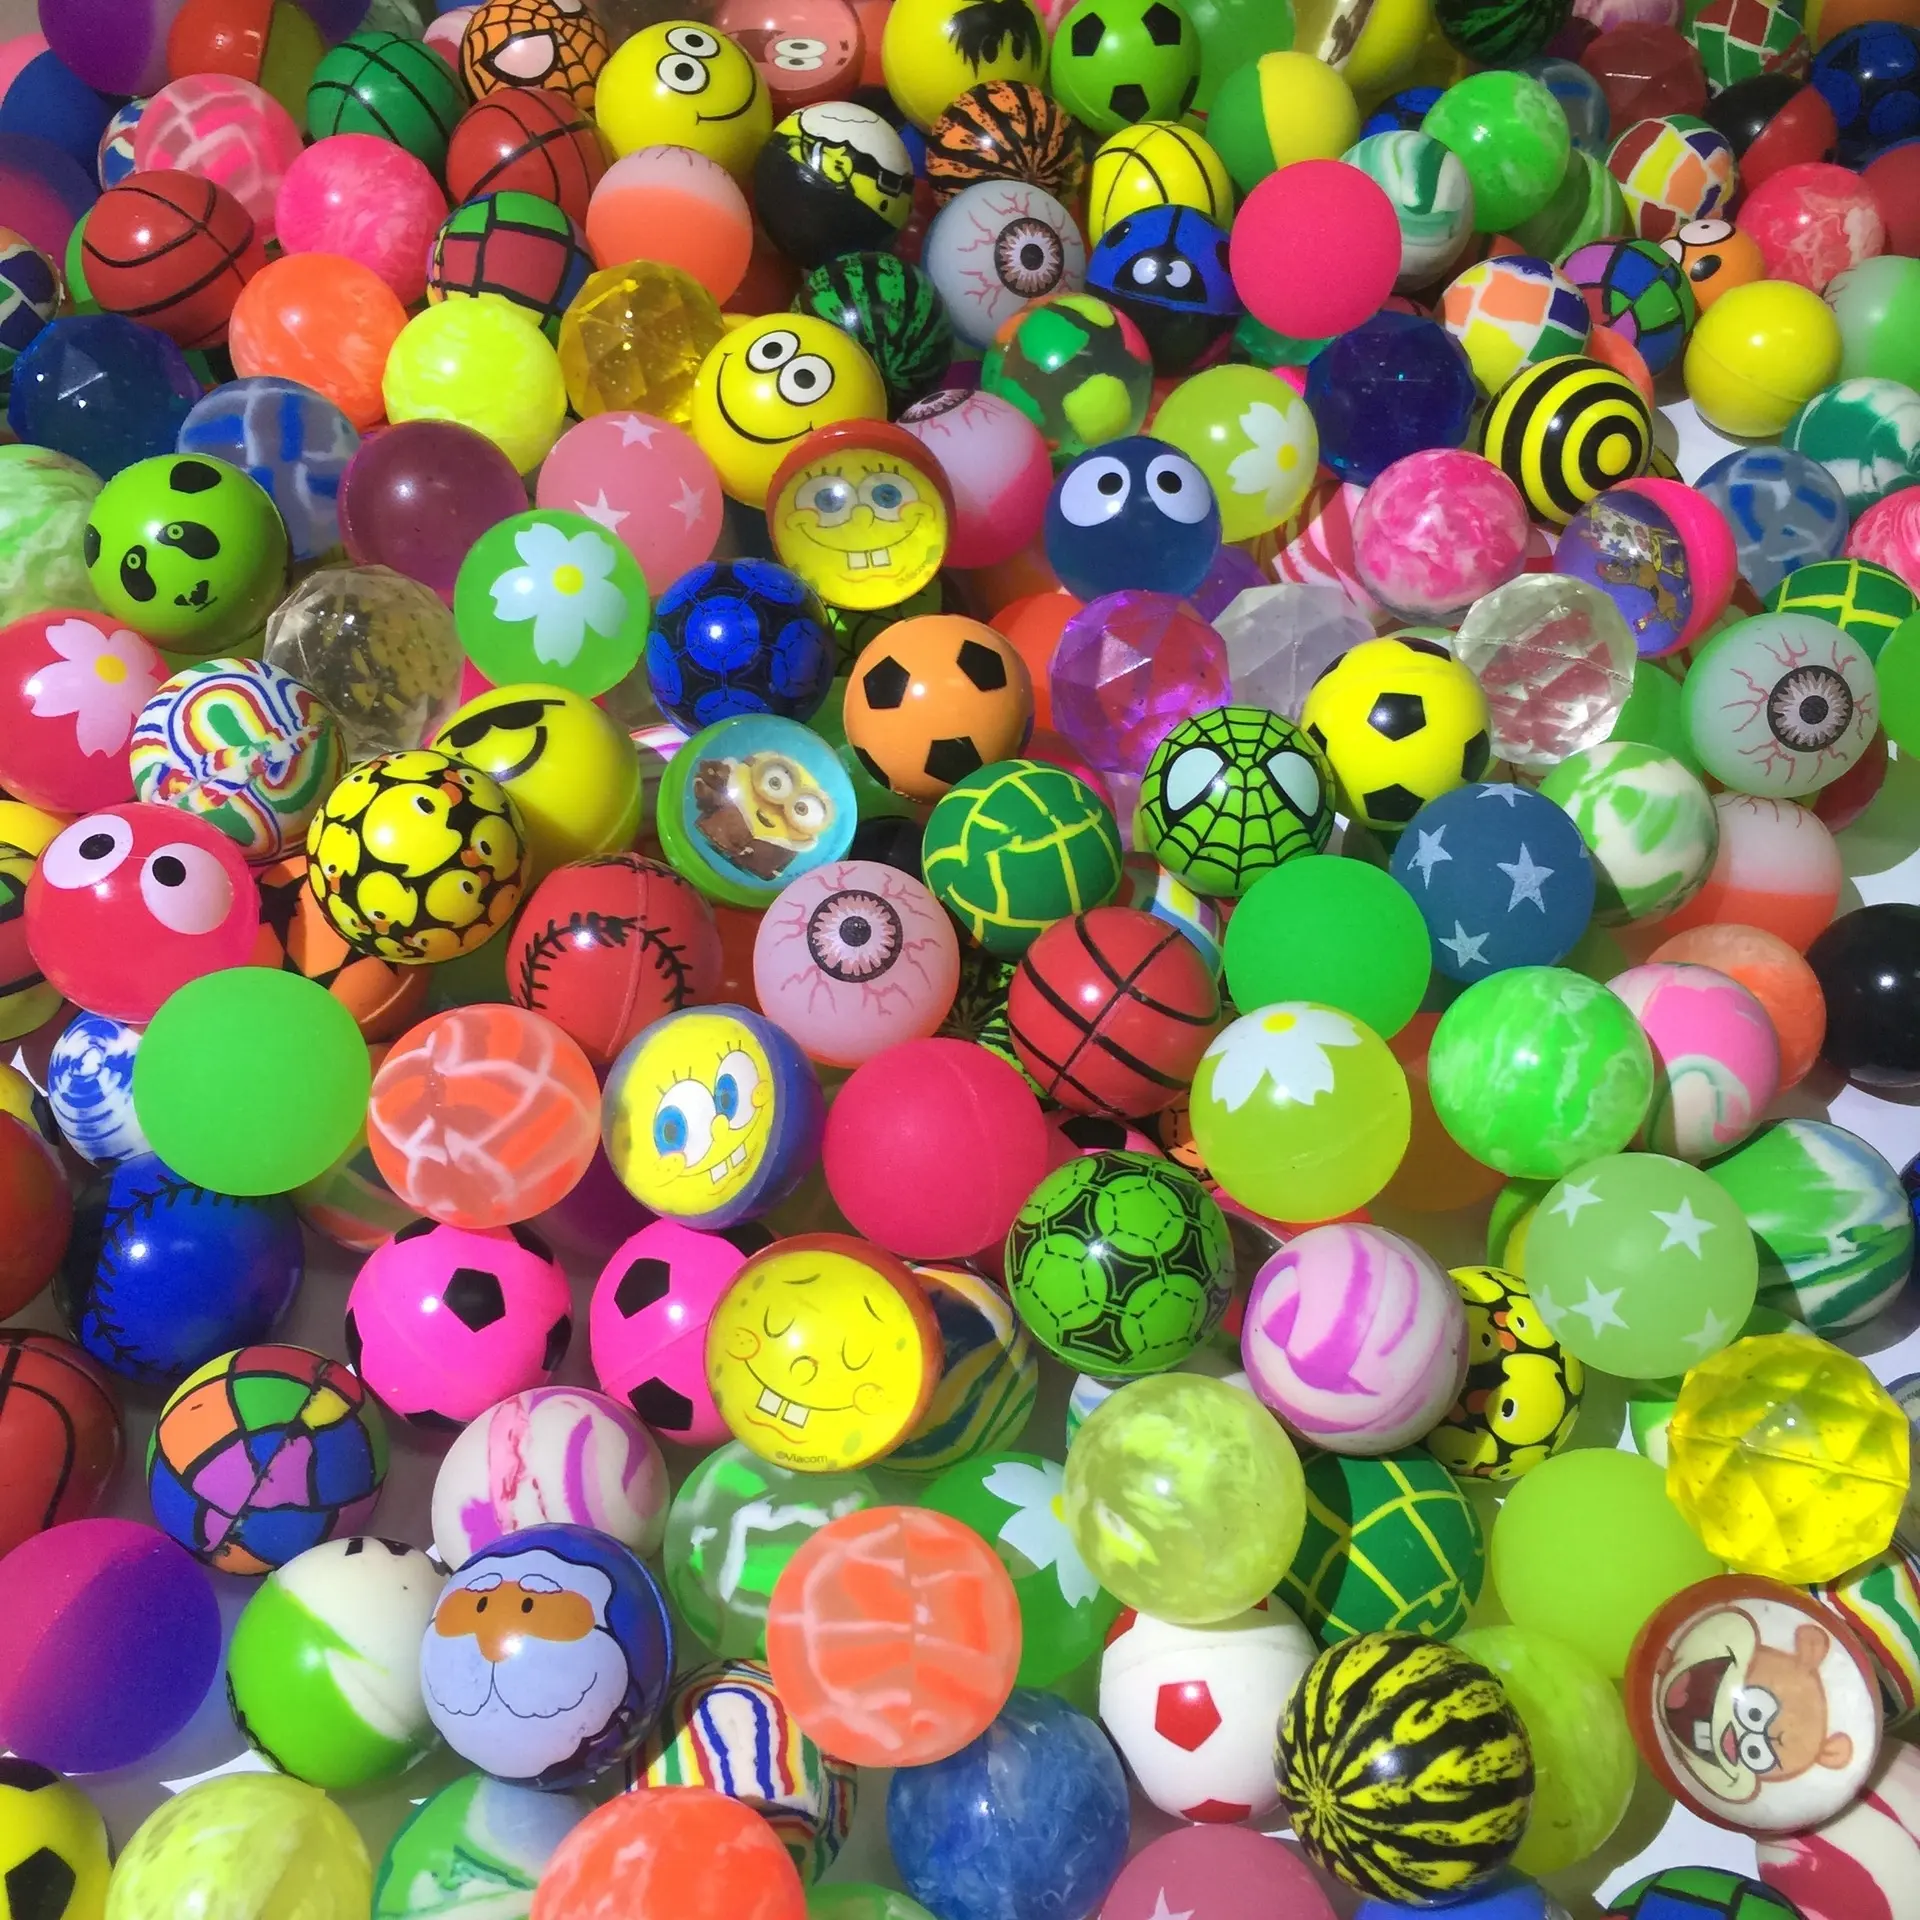 Toplu lastik kabarık topları çocuk oyuncak renkli kabarık topları Bolas De Goma atlama atlama zıplayan top